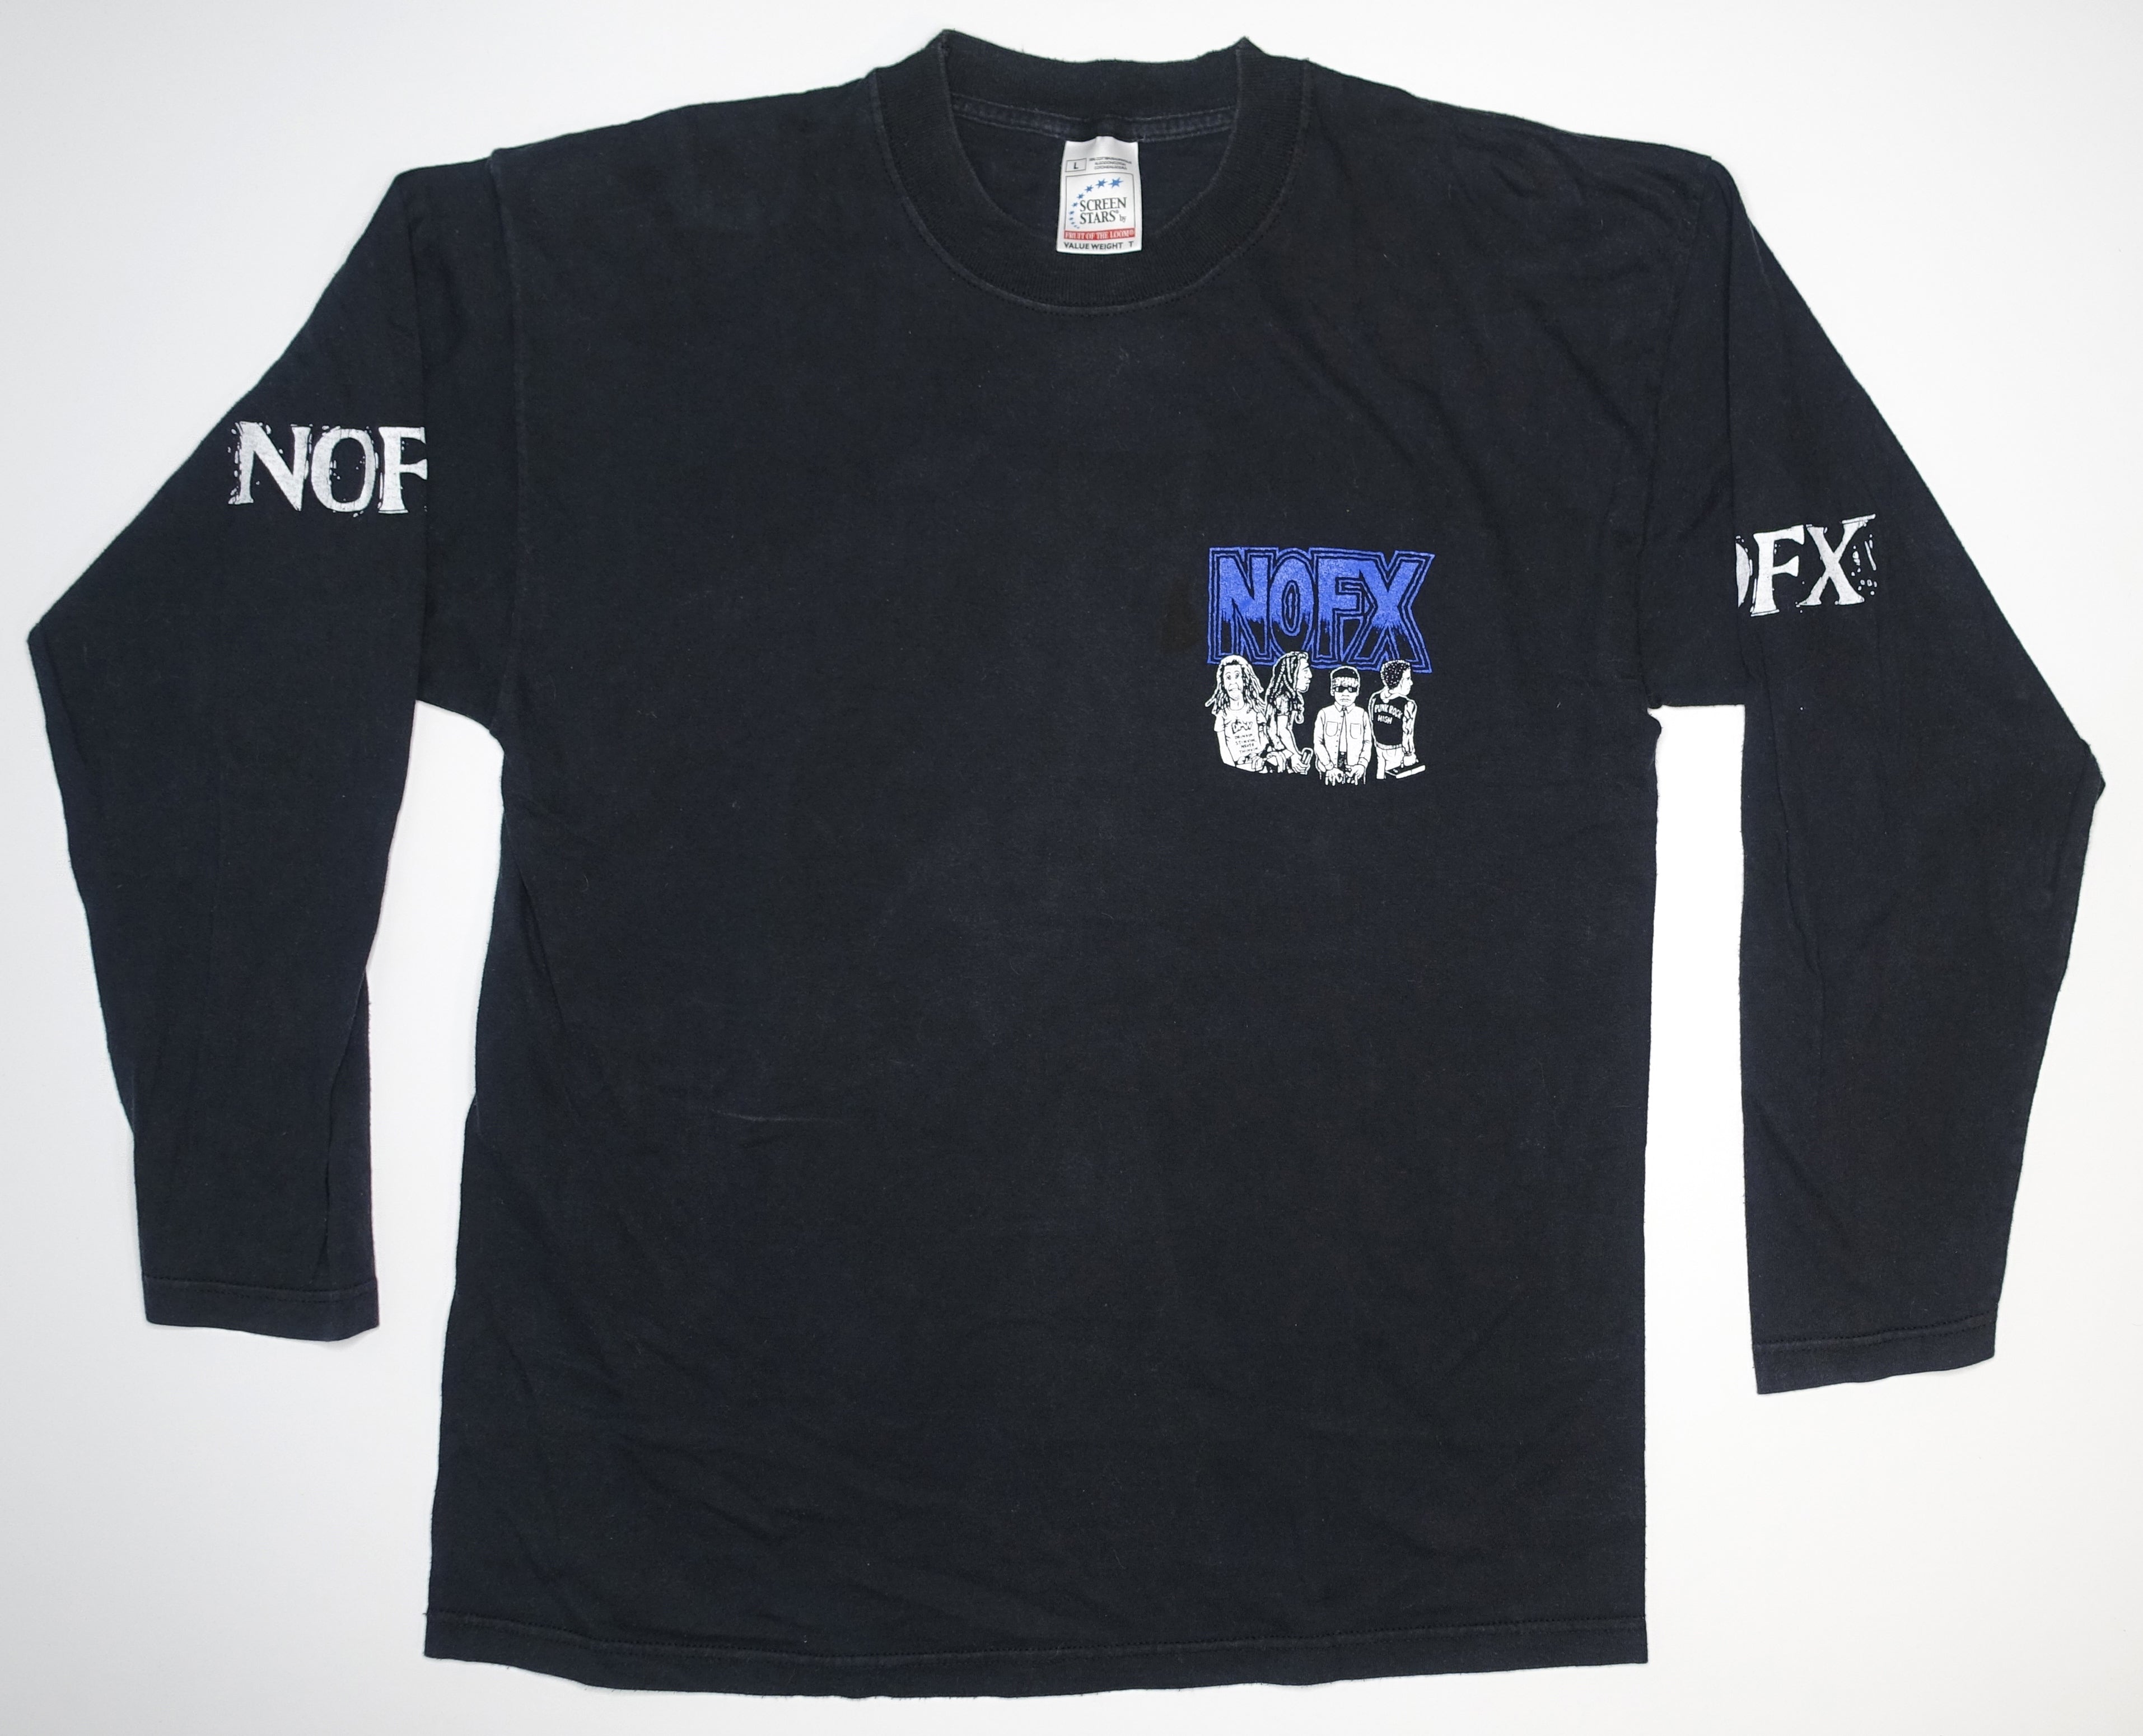 NOFX - Longest Line / Cartoon Star 90's Long Sleeve Tour Shirt Size La